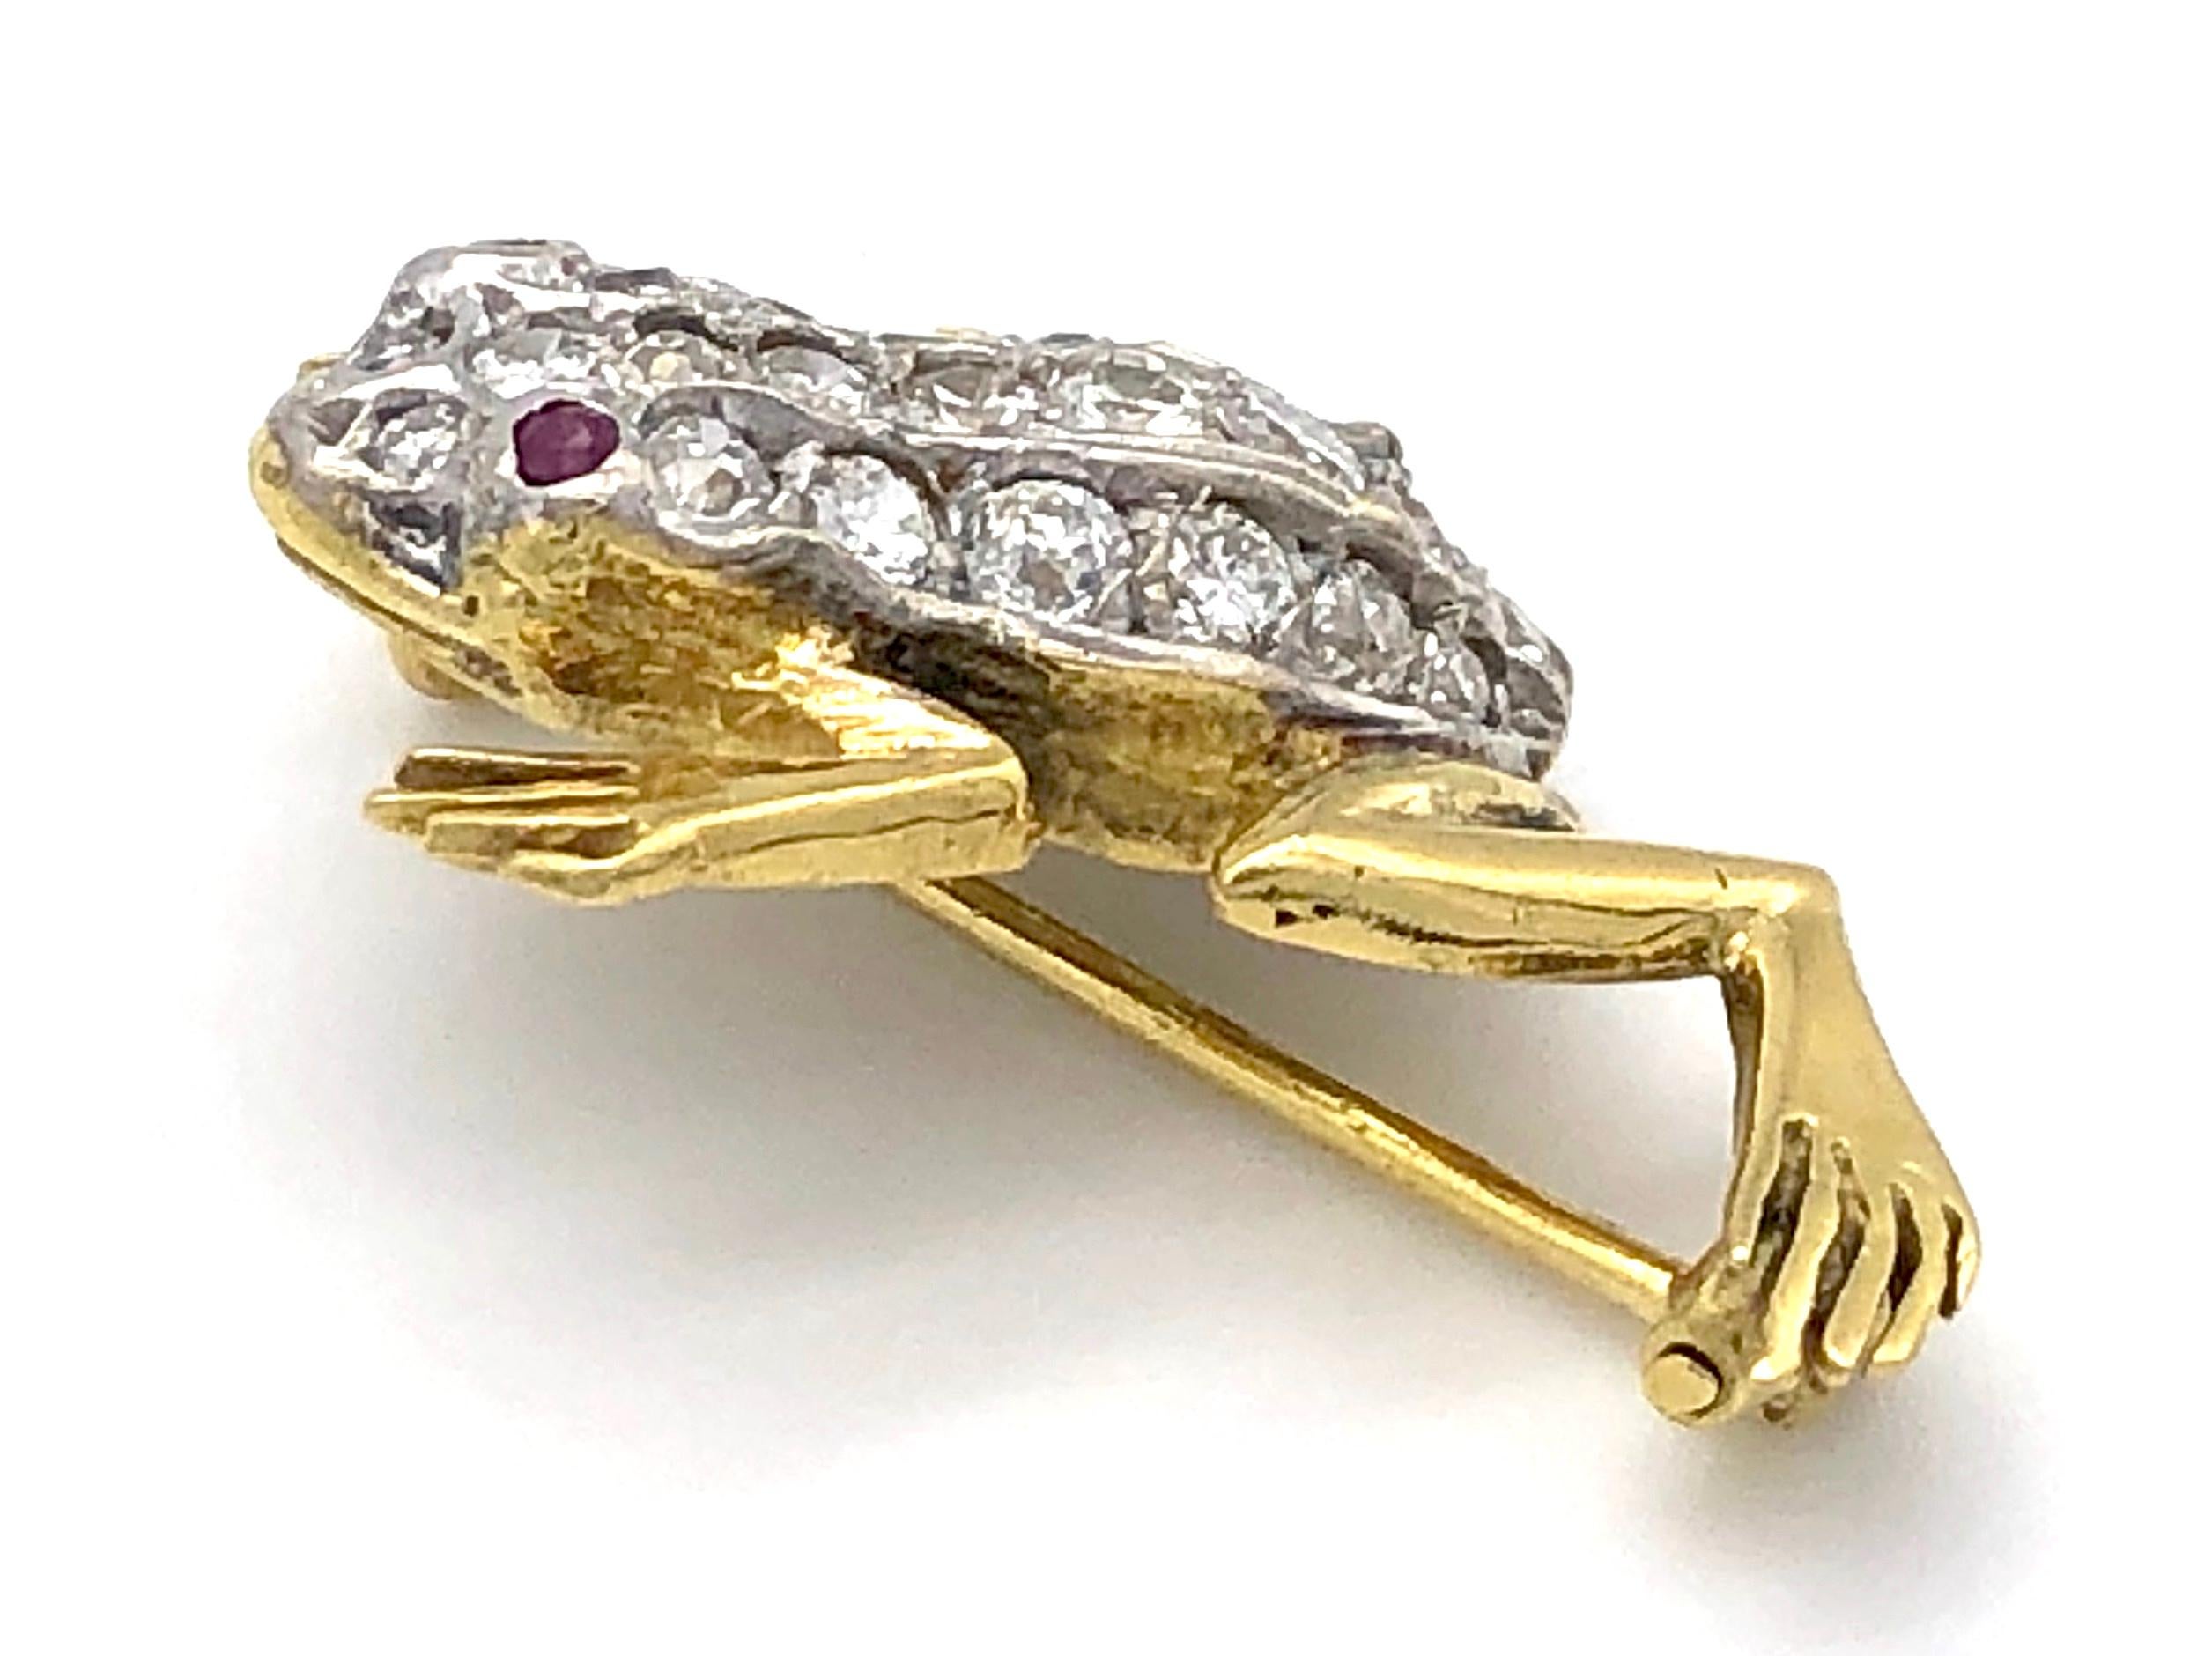 Cette jolie petite broche en forme de grenouille est sertie de diamants. Deux petits rubis servent d'yeux,